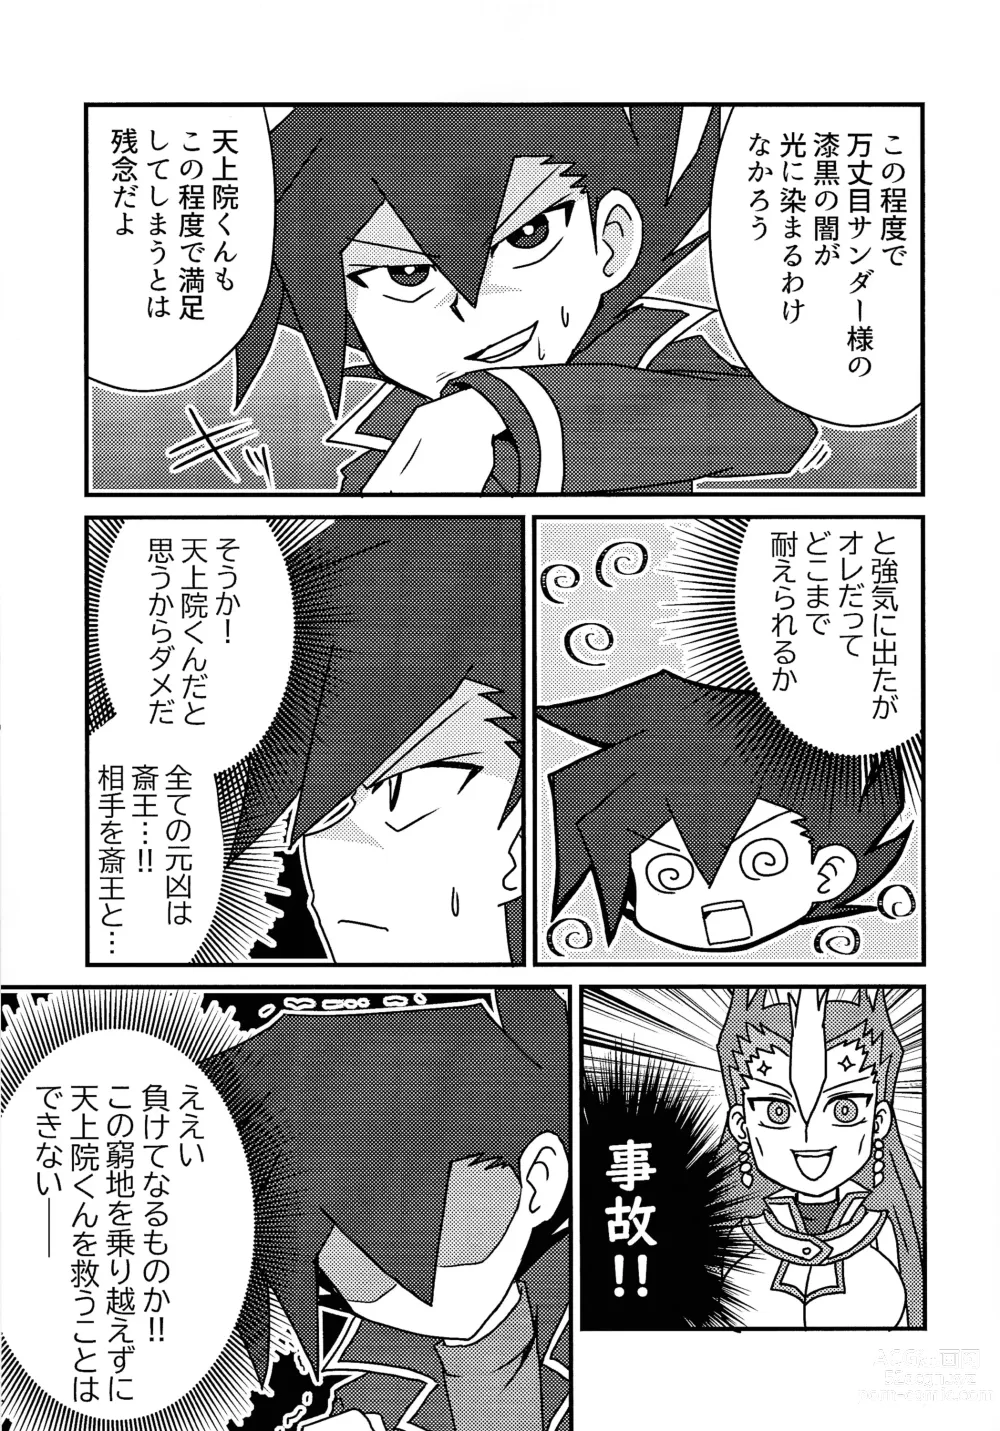 Page 10 of doujinshi Kuro no ore ga mata shiroku some rareyou to shite iru yodaga!?